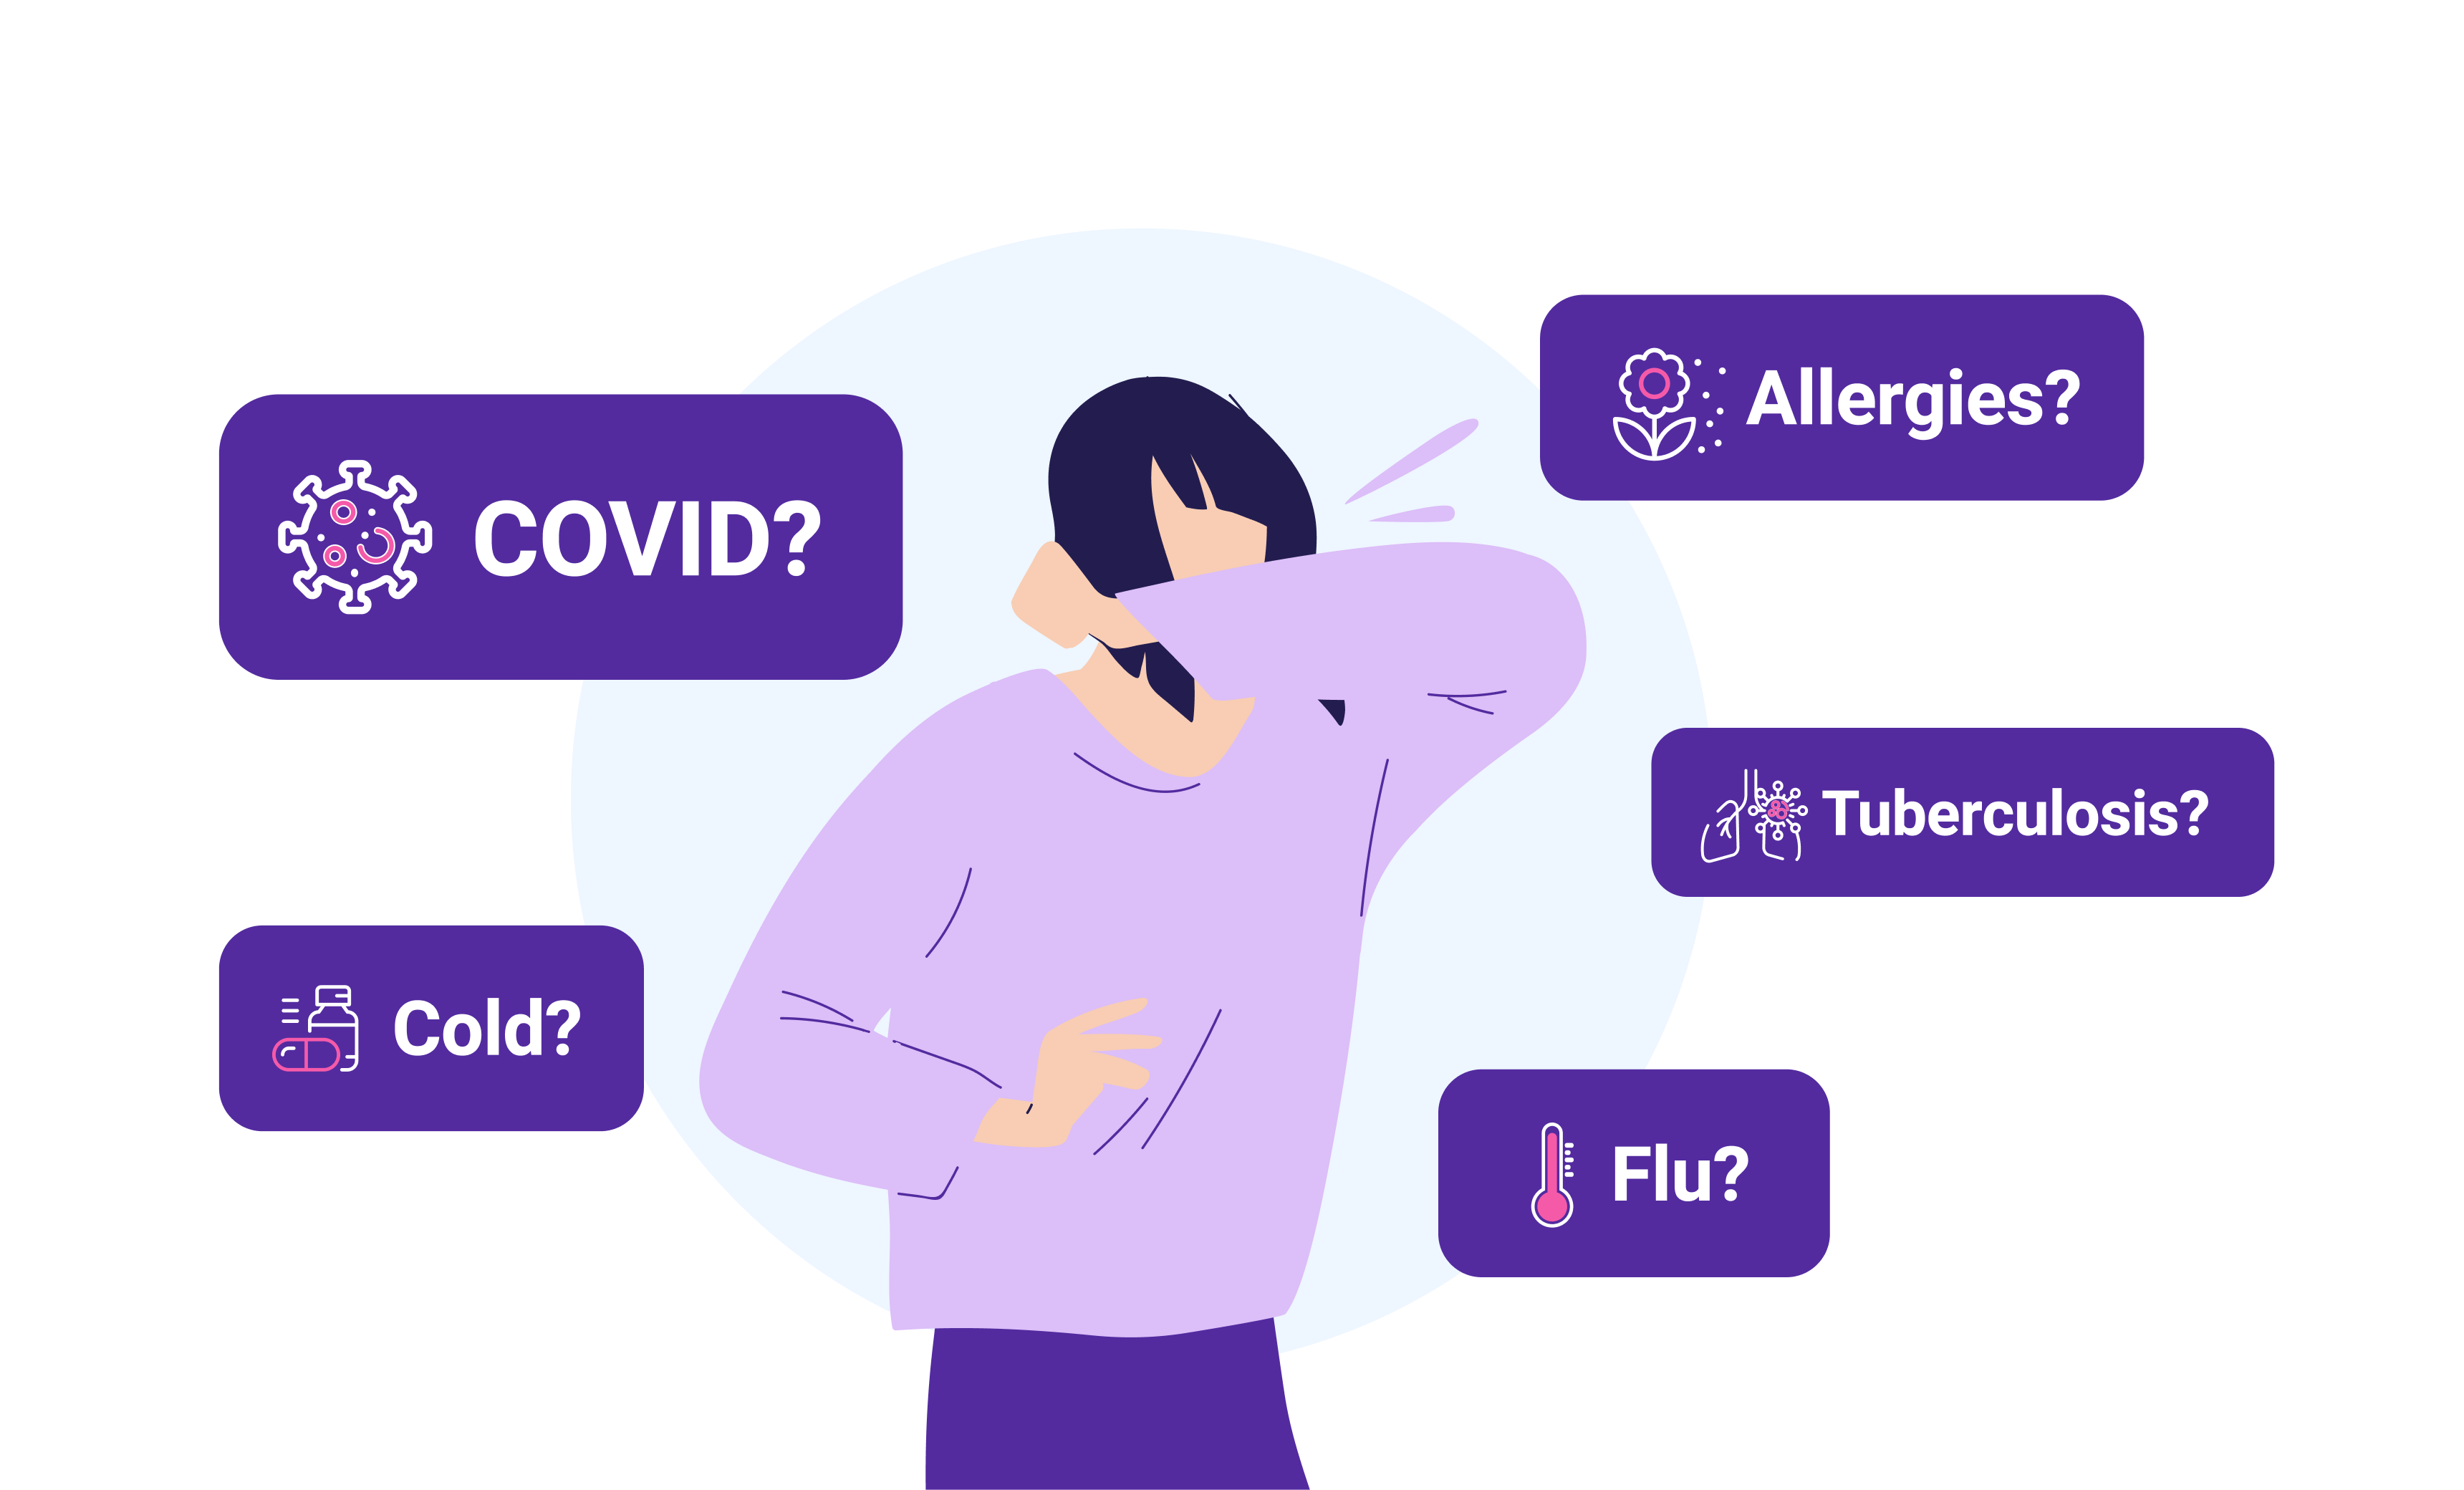 COVID, Flu, TB, or Allergies?